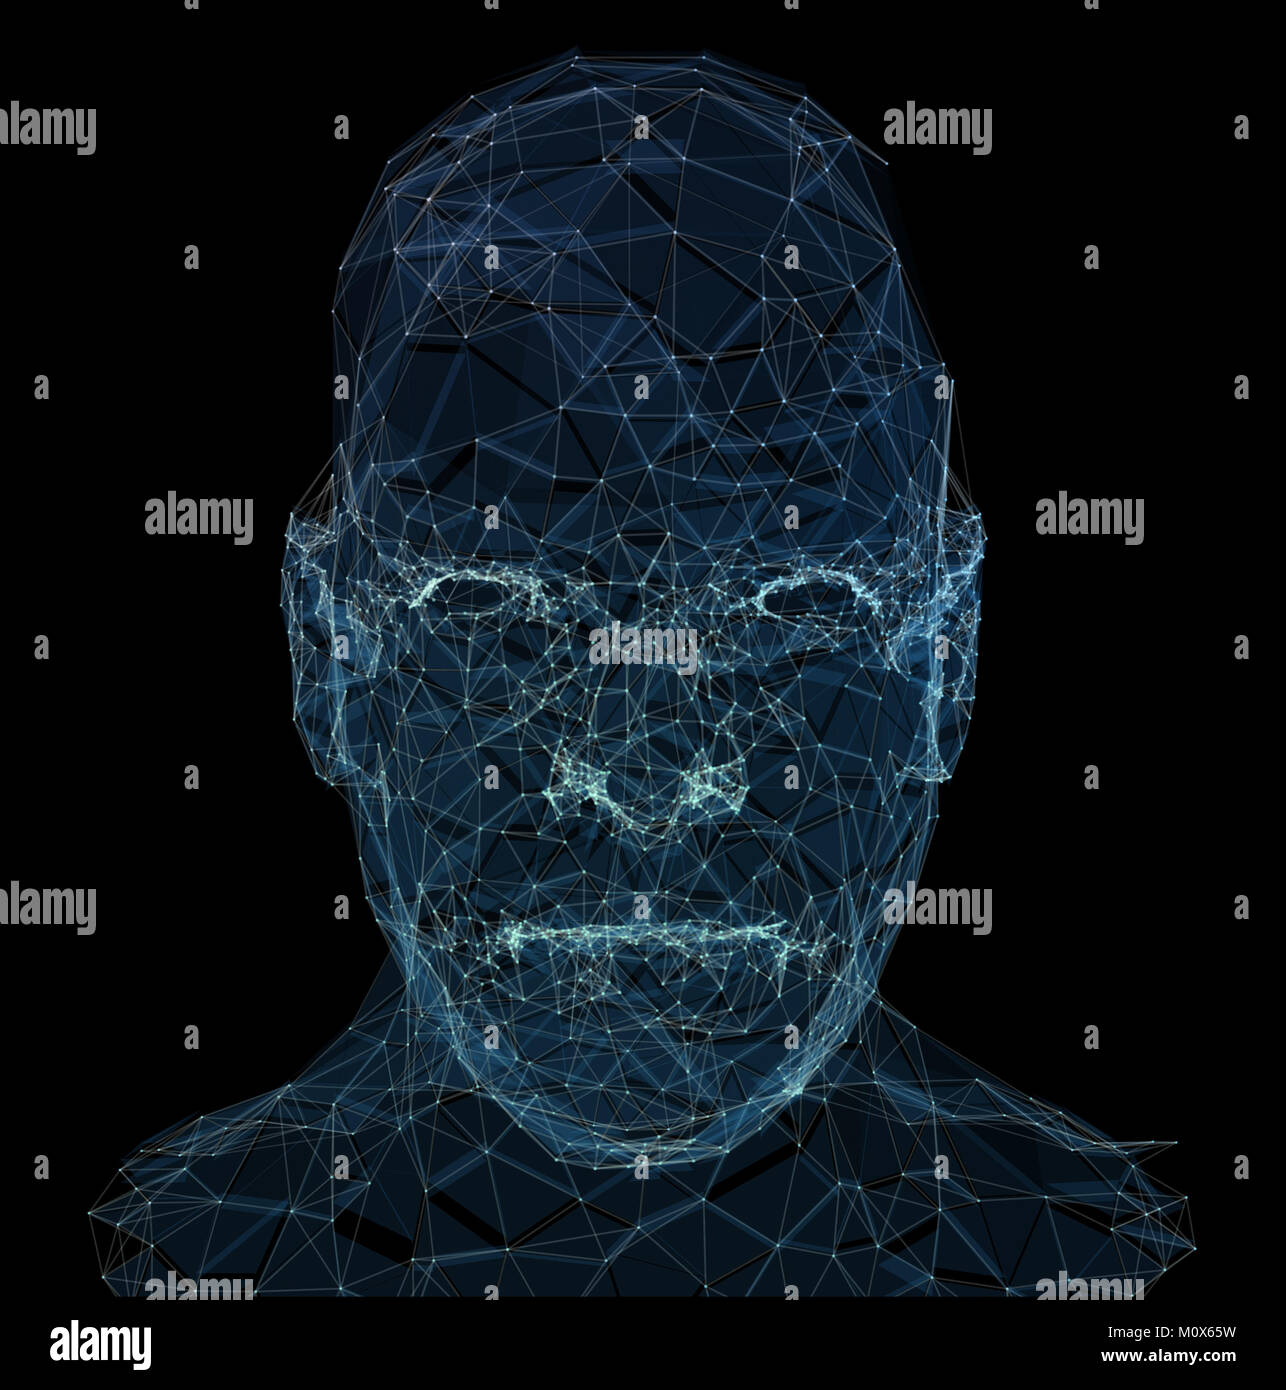 Menschlichen Kopf mit im 3D-Raum. Blau abstrakte futuristische Medizin, Wissenschaft und Technik Hintergrund Abbildung. 3D-Rendering. Stockfoto